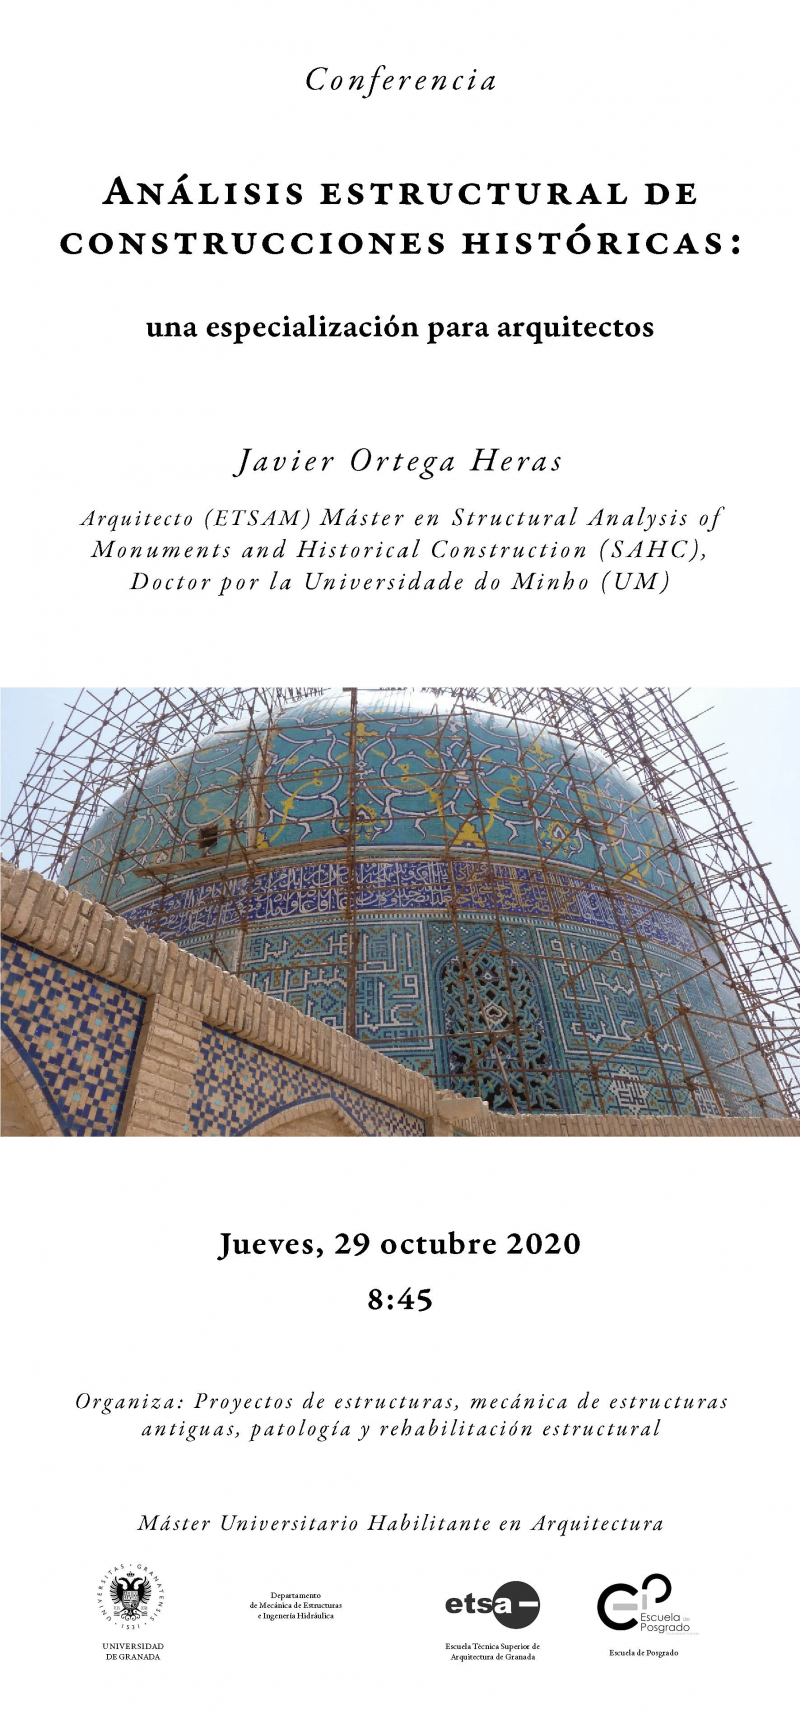 Cartel de la conferencia Análisis estructural de construcciones históricas: una especialización para arquitectos